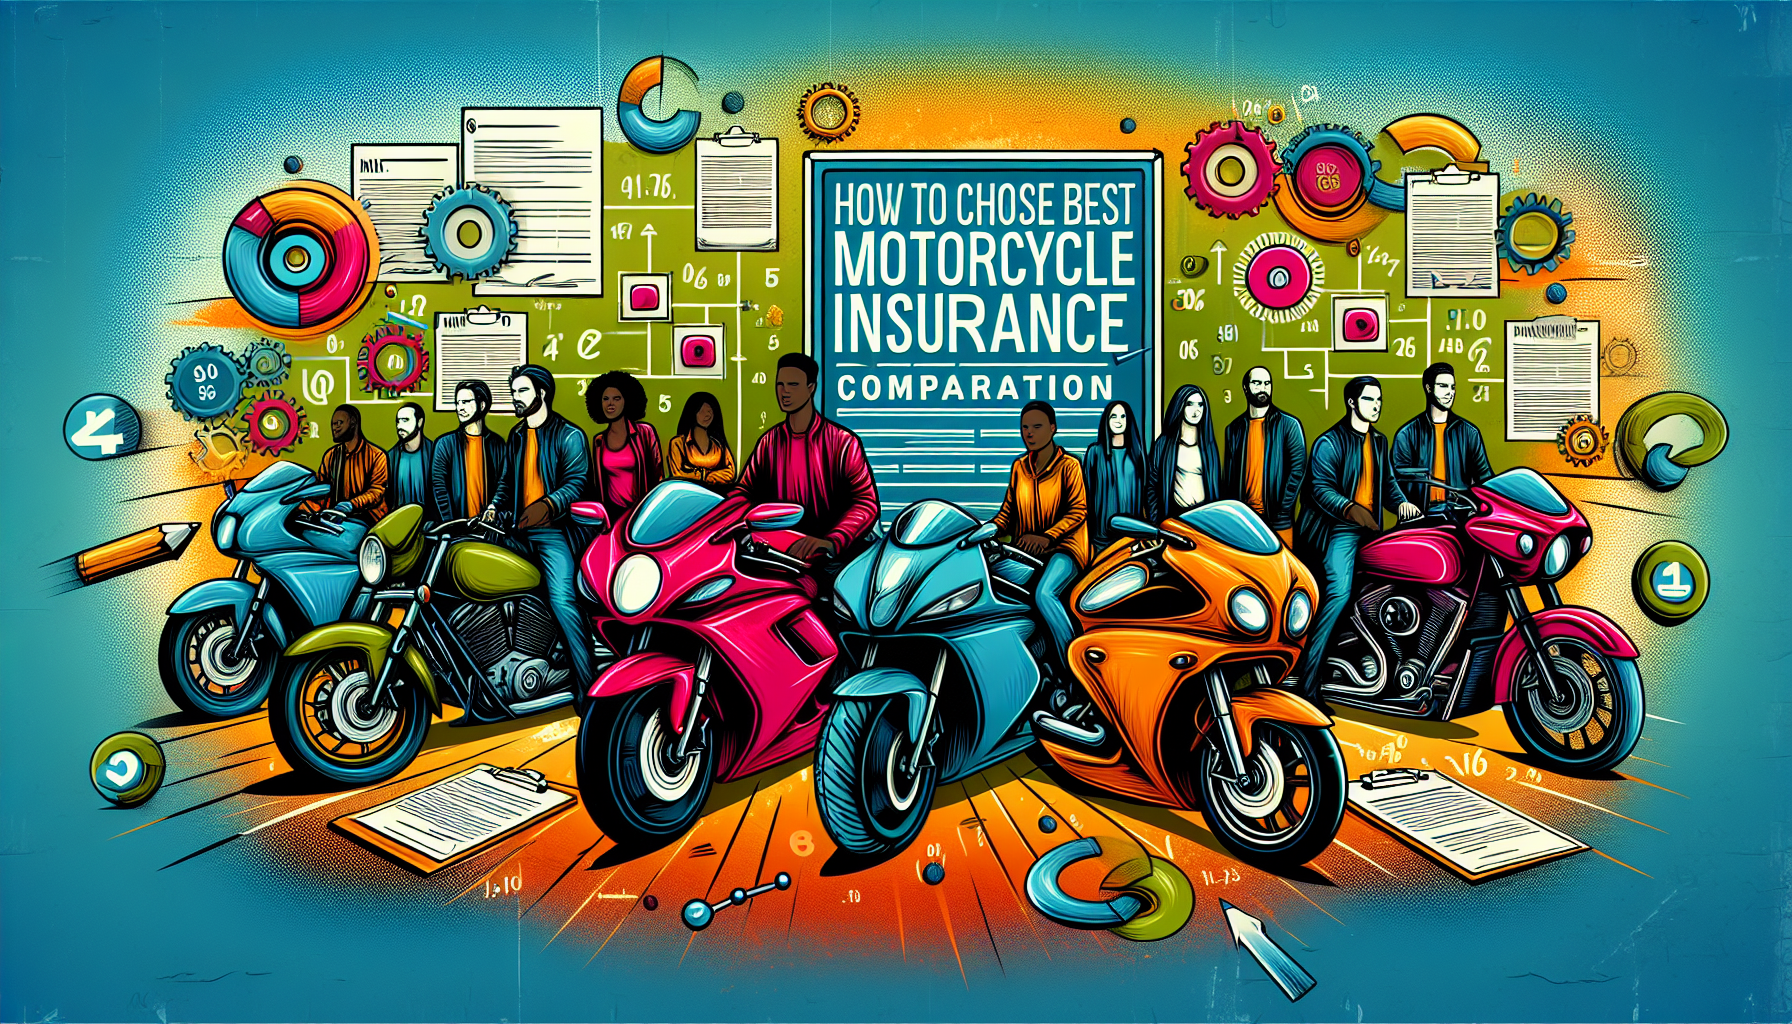 utilisez notre comparateur d'assurance moto 97420 pour trouver la meilleure offre. découvrez comment choisir la meilleure assurance moto 97420 grâce à notre outil de comparaison.